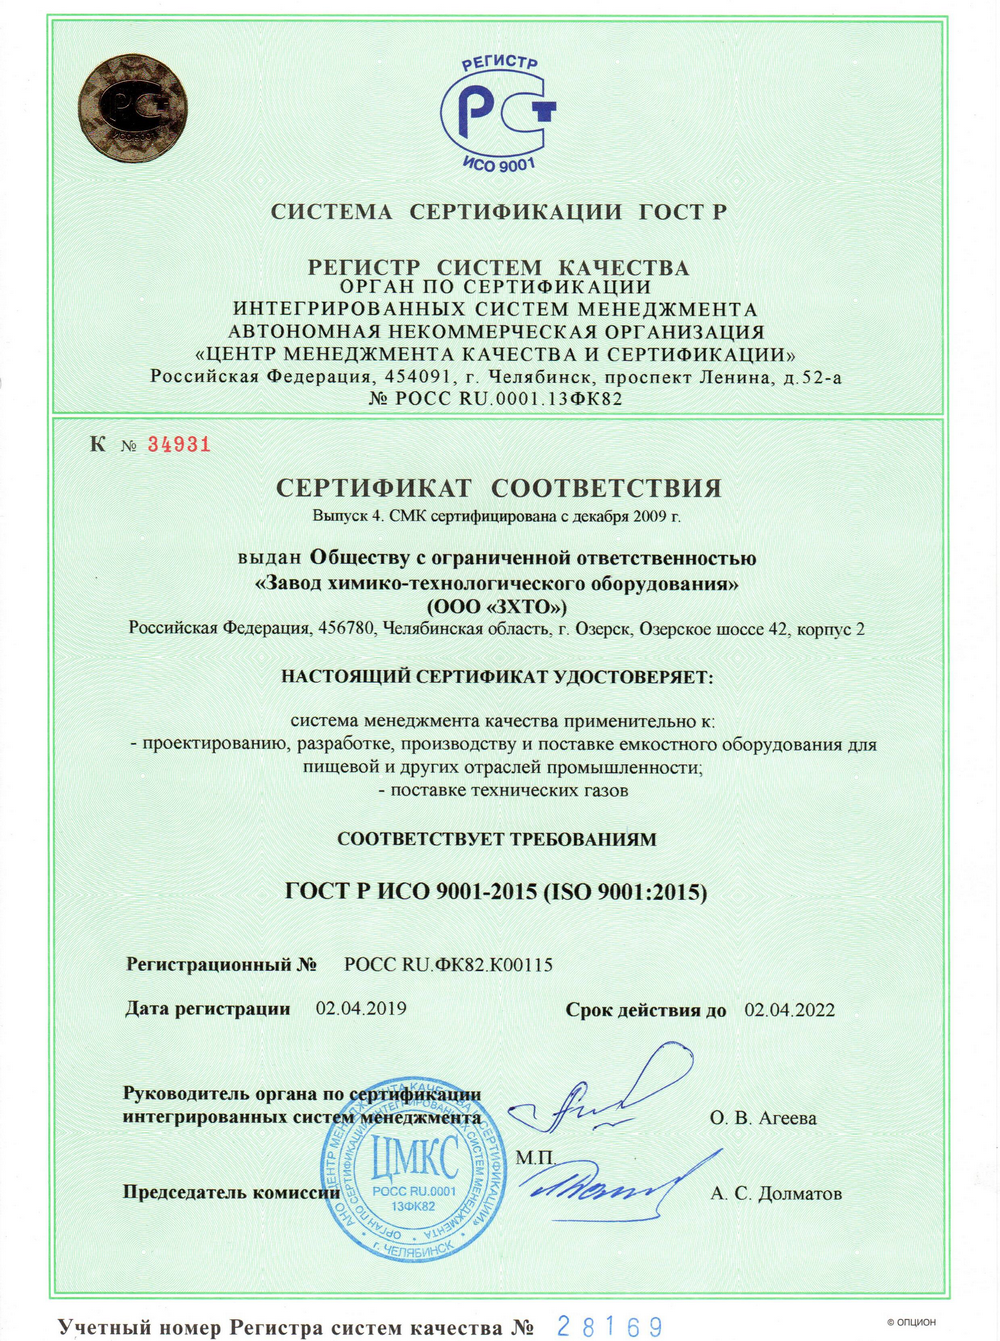 Гост смк 9001 2015. Сертификат системы менеджмента качества ИСО 9001-2015 (ISO 9001^2015),. Сертификация системы менеджмента качества ИСО 9001. Сертификация ГОСТ Р ИСО 9001 2015. Сертификат СМК ISO 9001.